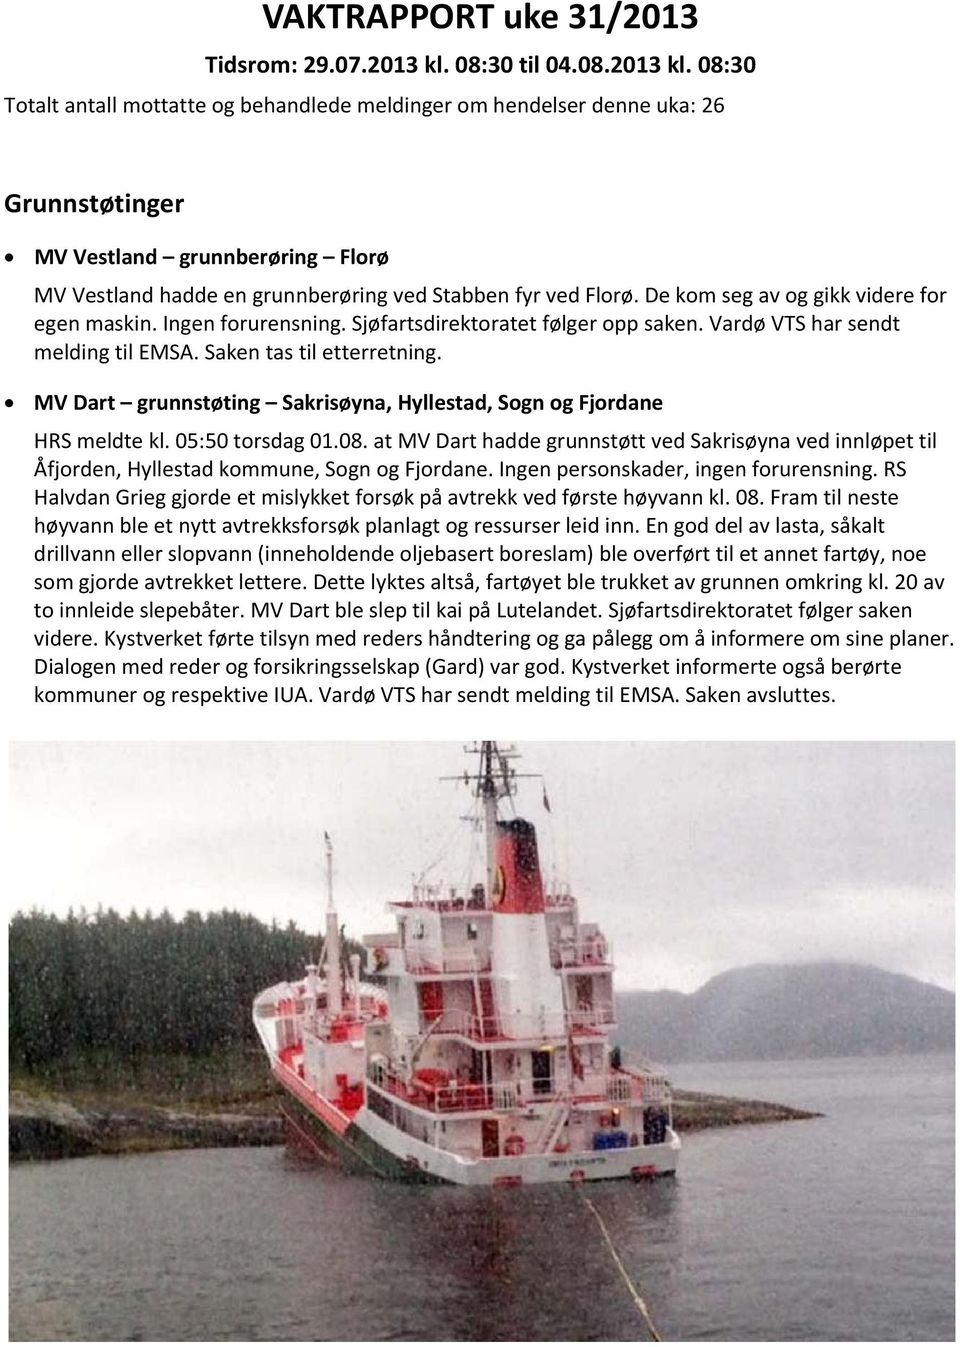 08:30 Totalt antall mottatte og behandlede meldinger om hendelser denne uka: 26 Grunnstøtinger MV Vestland grunnberøring Florø MV Vestland hadde en grunnberøring ved Stabben fyr ved Florø.